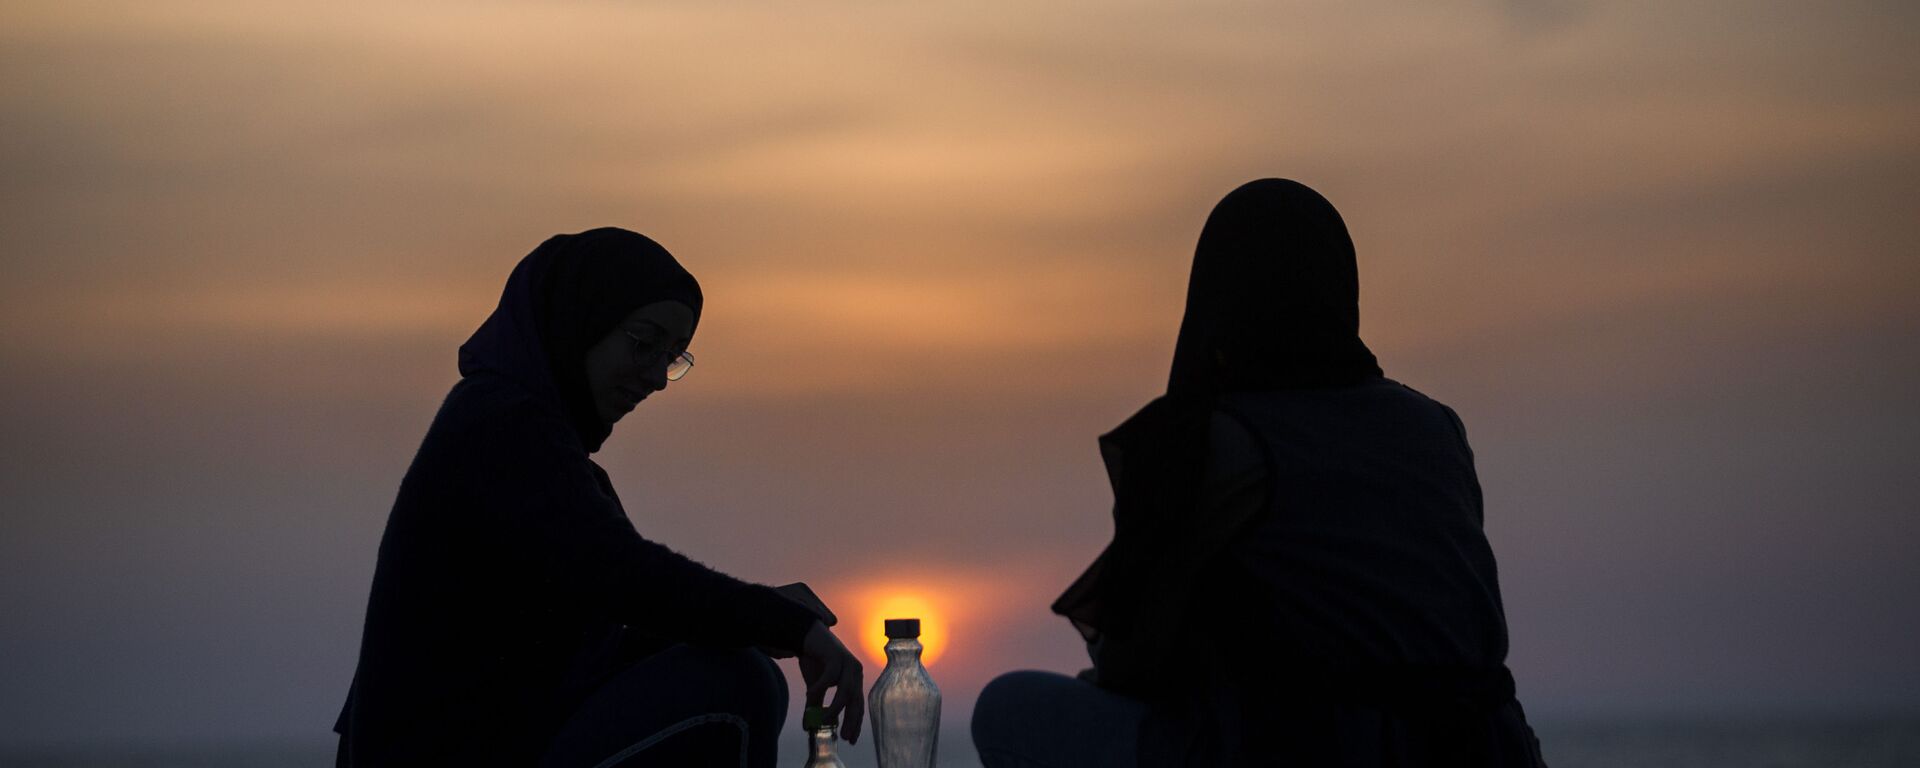 Мусульманские женщины наблюдают за закатом, фото из архива - Sputnik Azərbaycan, 1920, 19.09.2022